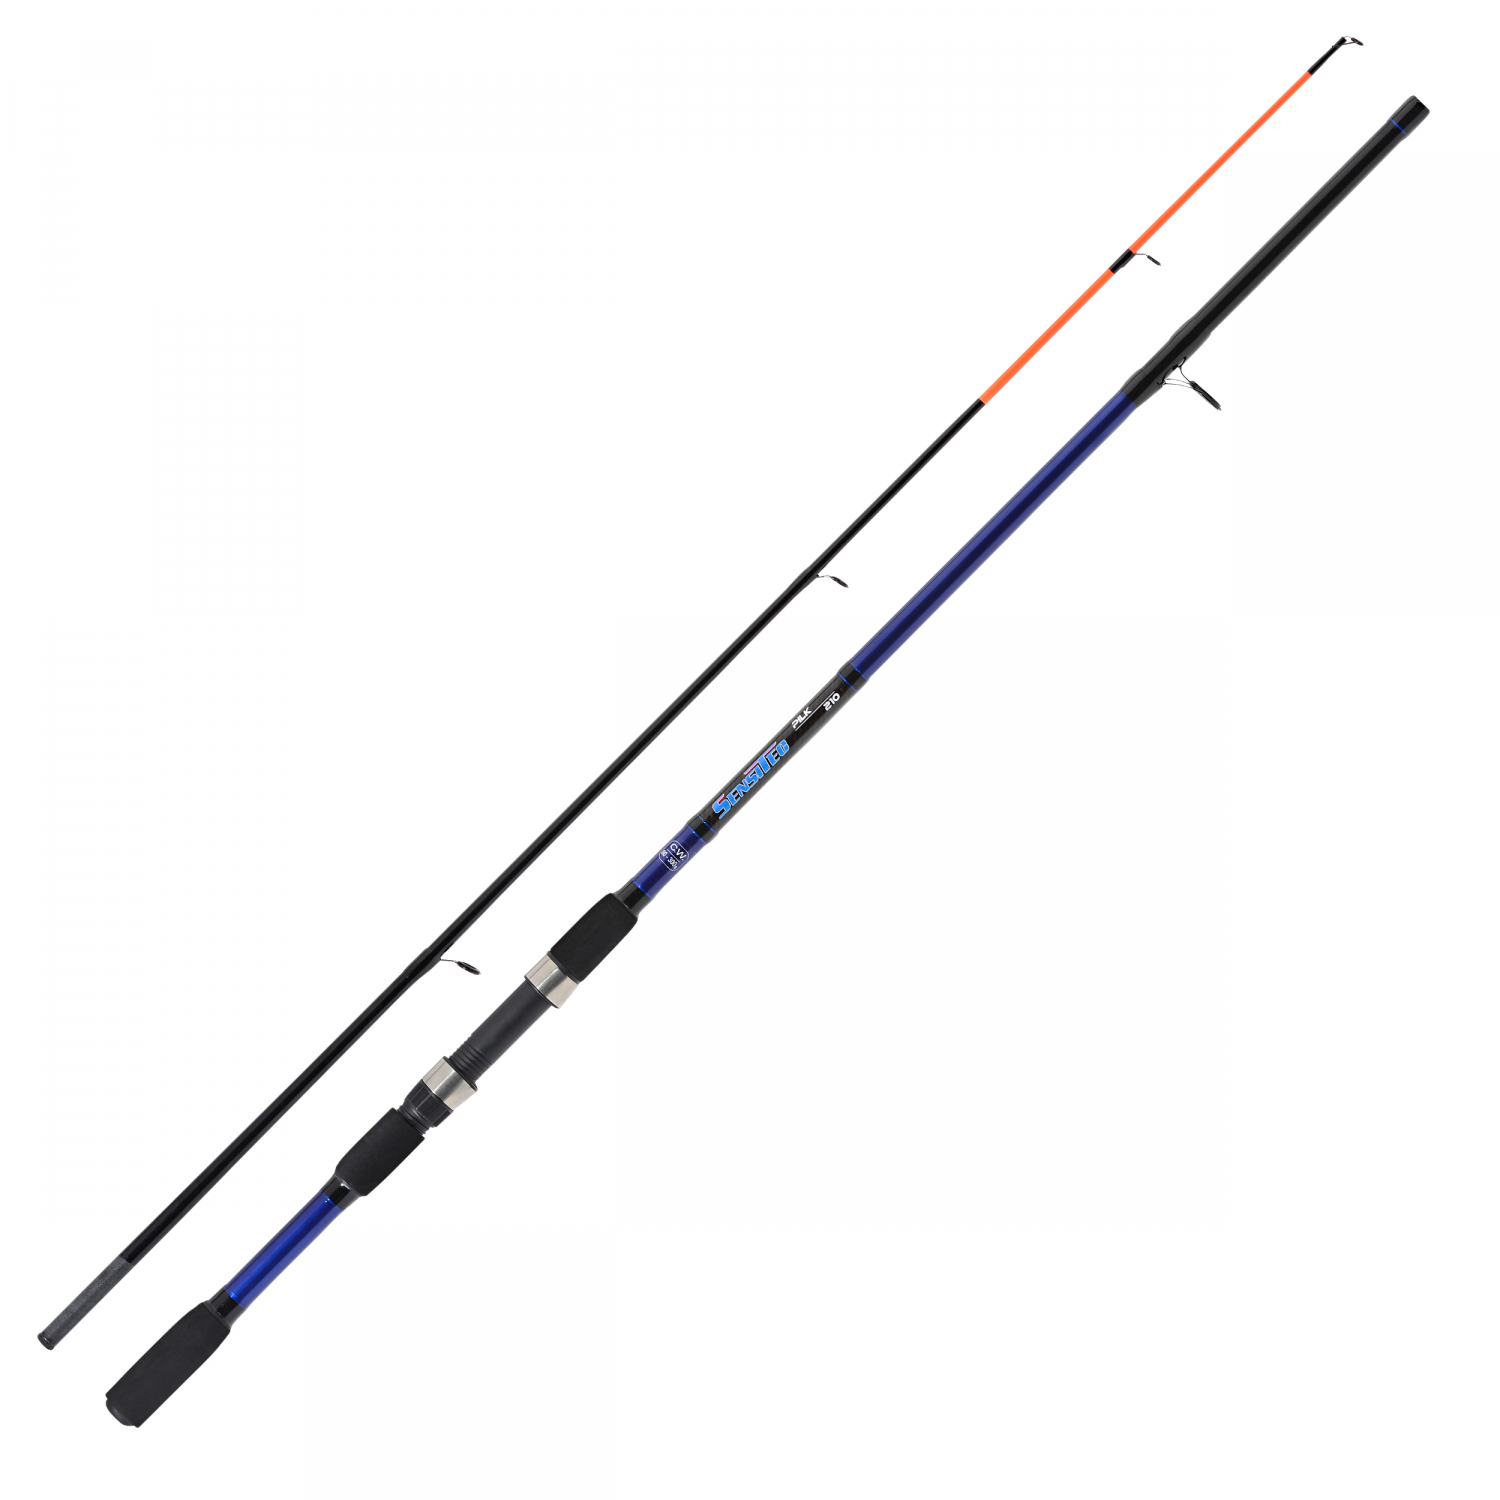 Sänger Sänger Sensitec Sea Rod Series Pilk Fishing Rods 